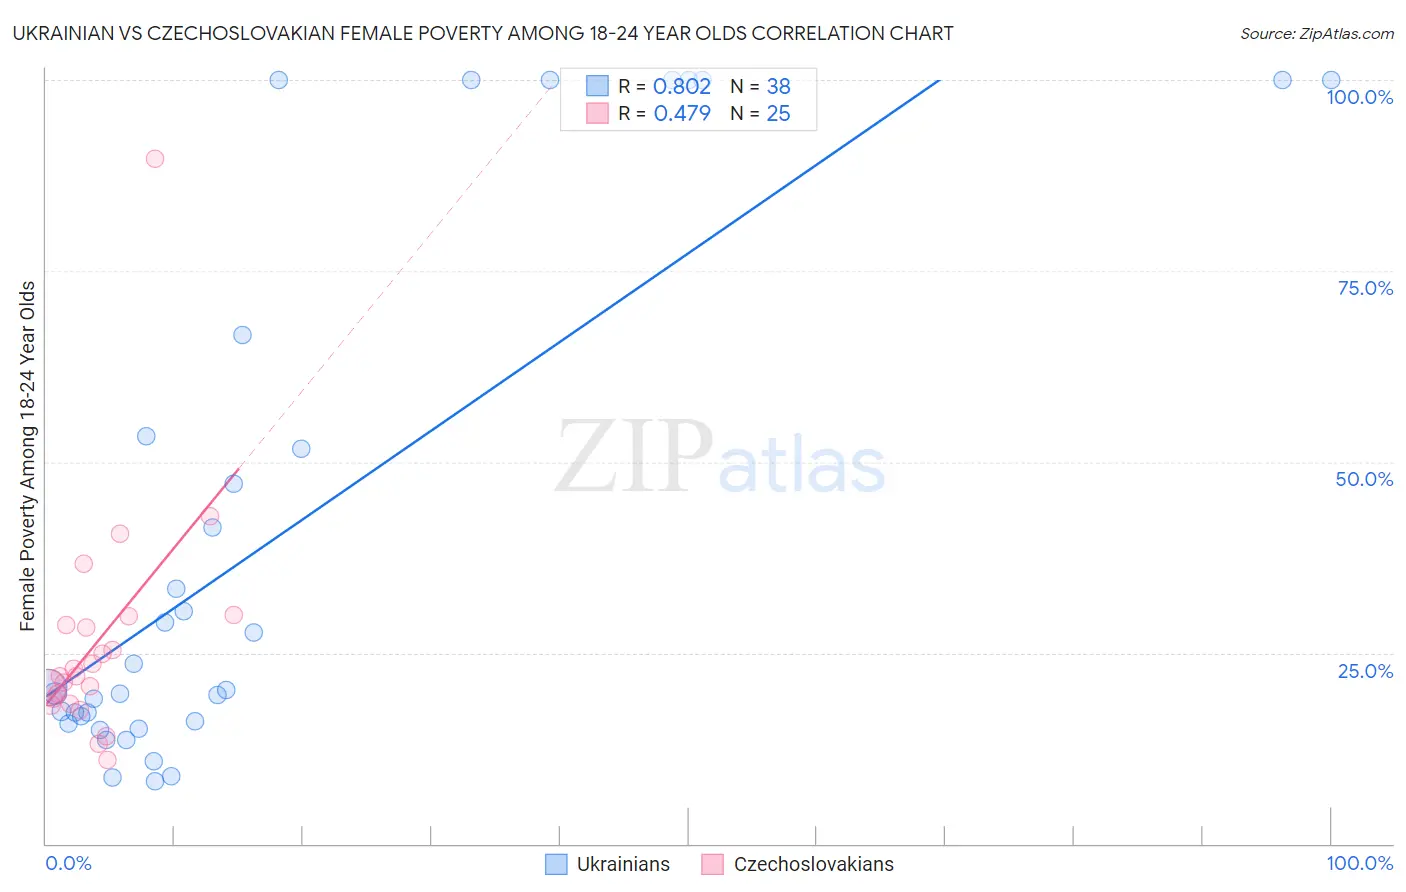 Ukrainian vs Czechoslovakian Female Poverty Among 18-24 Year Olds